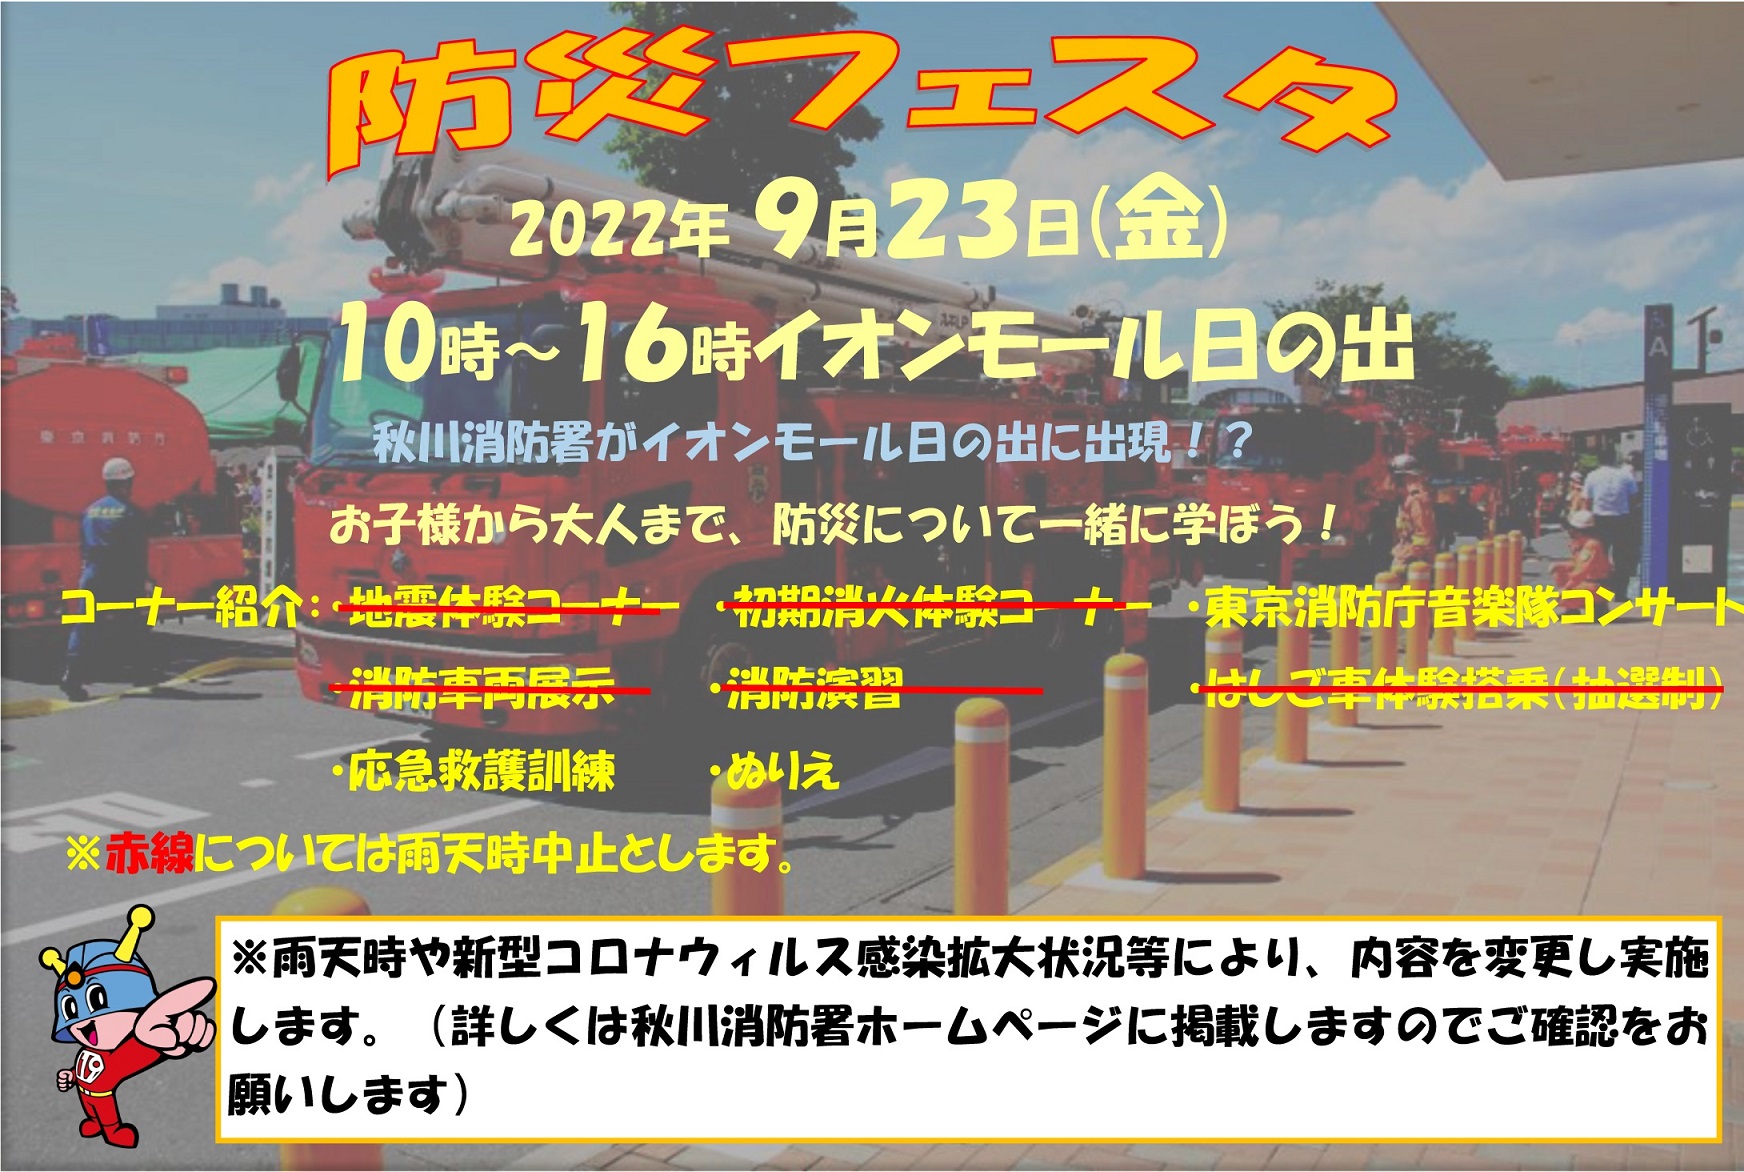 秋川消防署 防災フェスタ2022 in イオンモール日の出ポスター